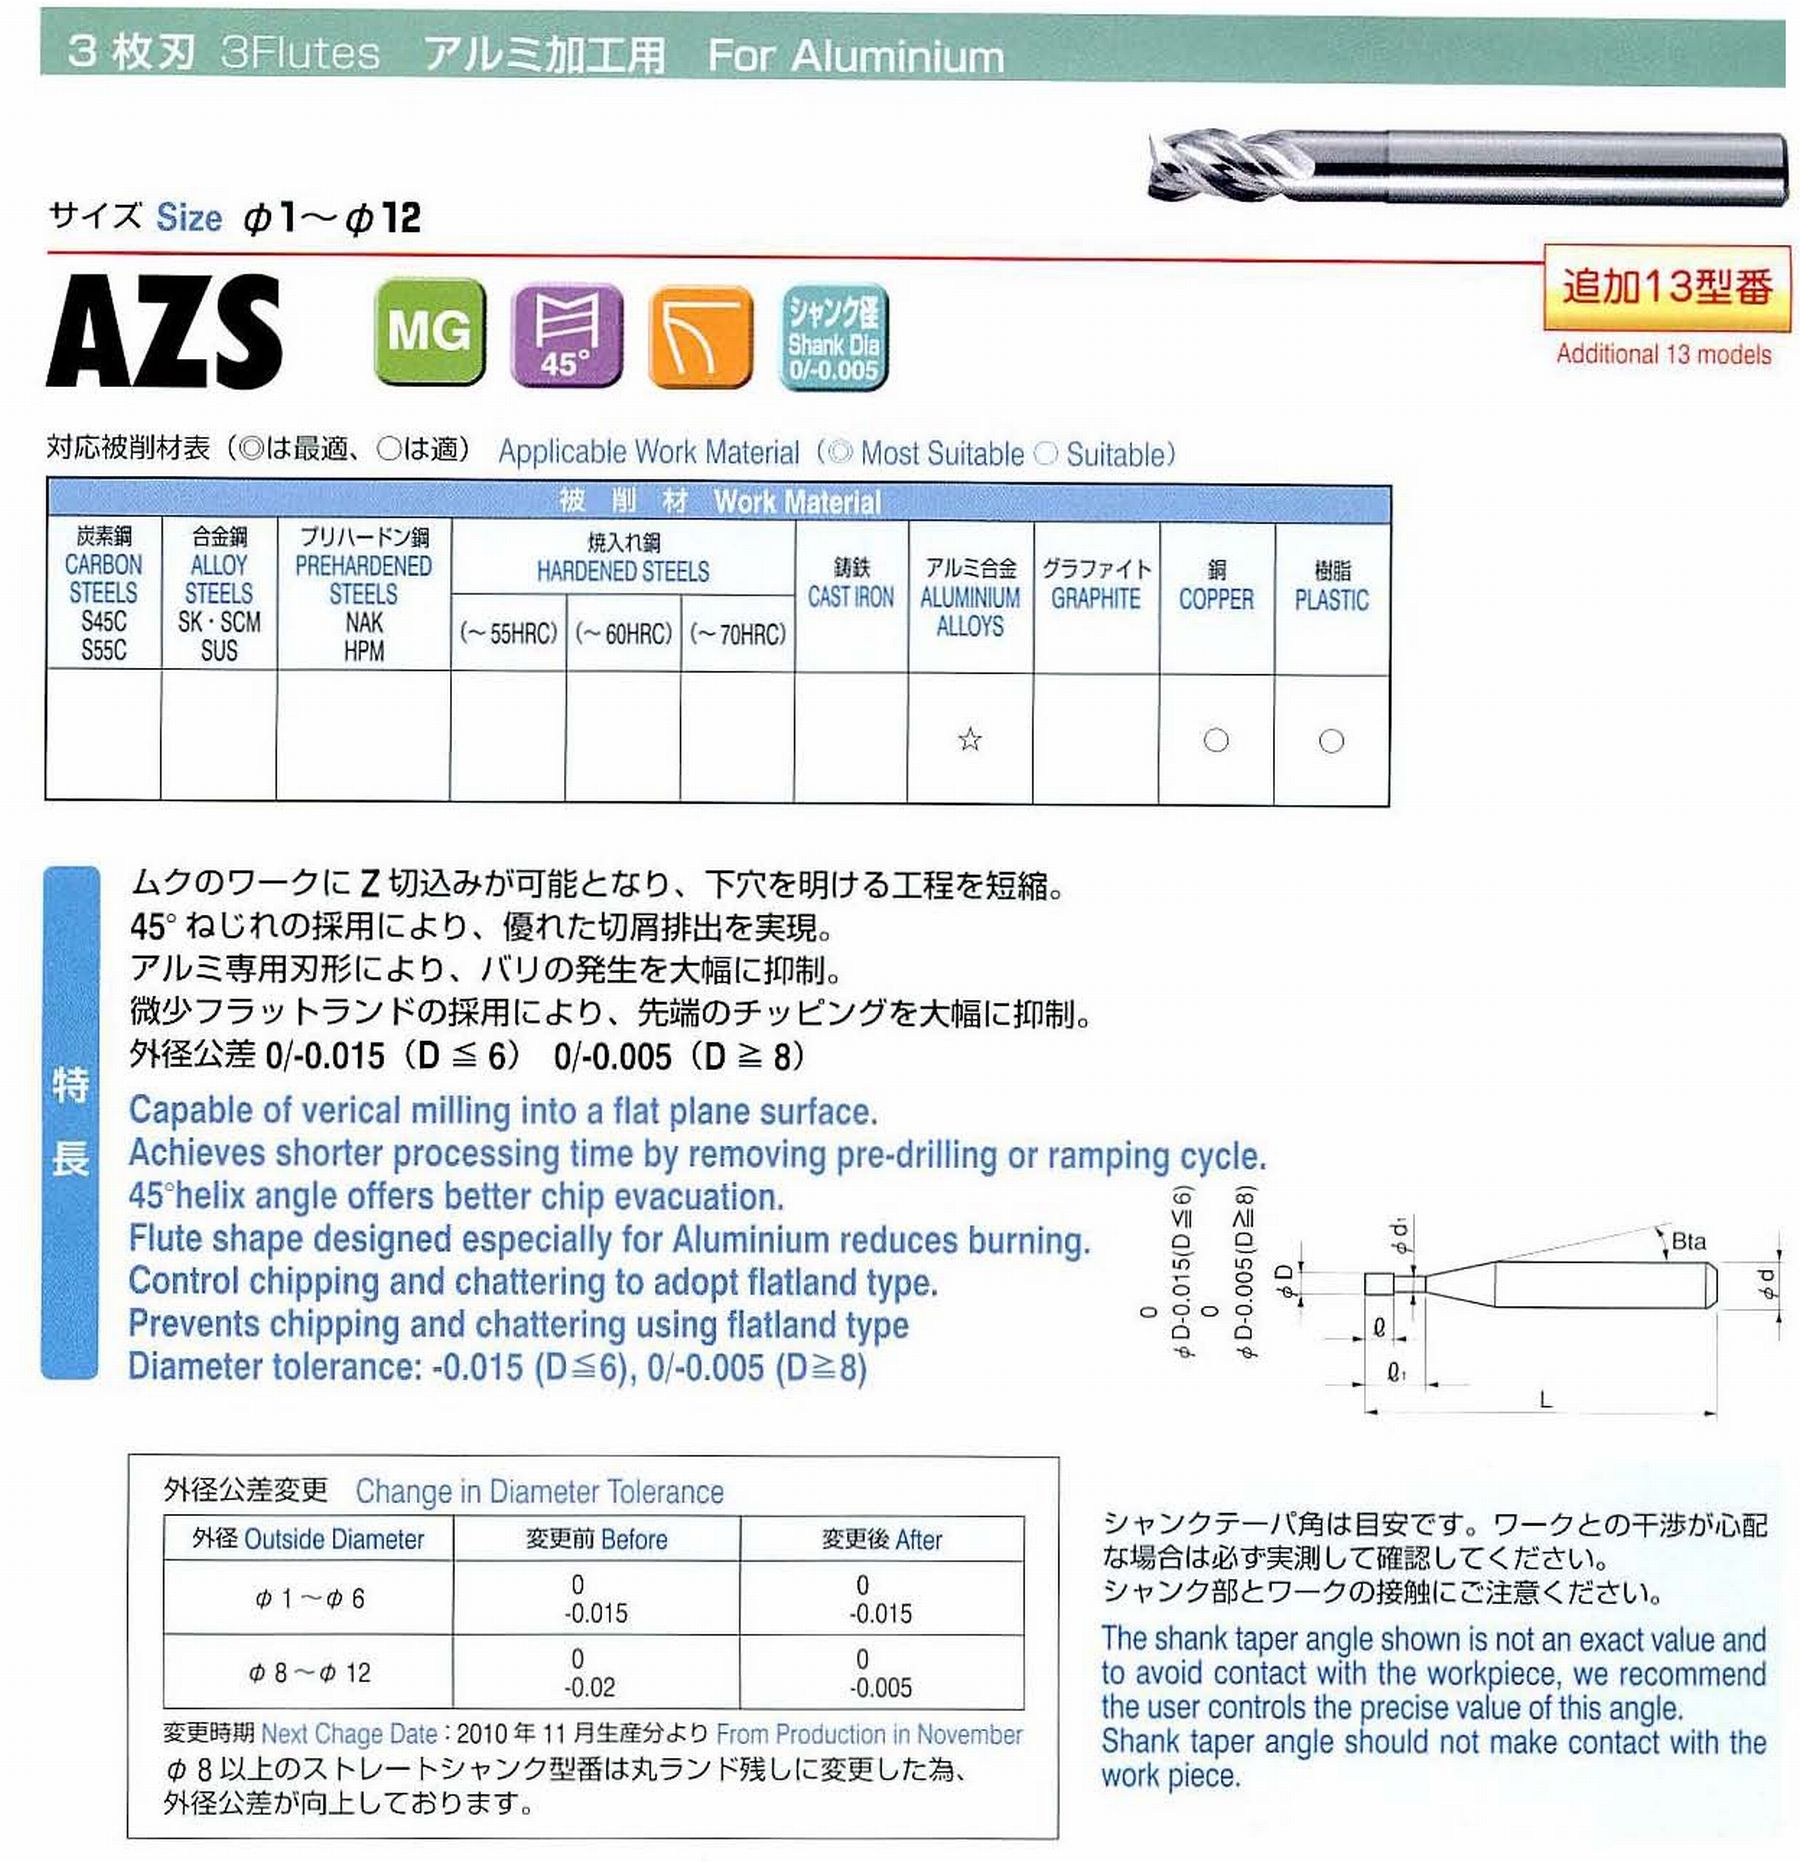 ユニオンツール 3枚刃 AZS3120-360 外径12 有効長36 刃長24 首径11.82 シャンクテーパ角- 全長110 シャンク径12